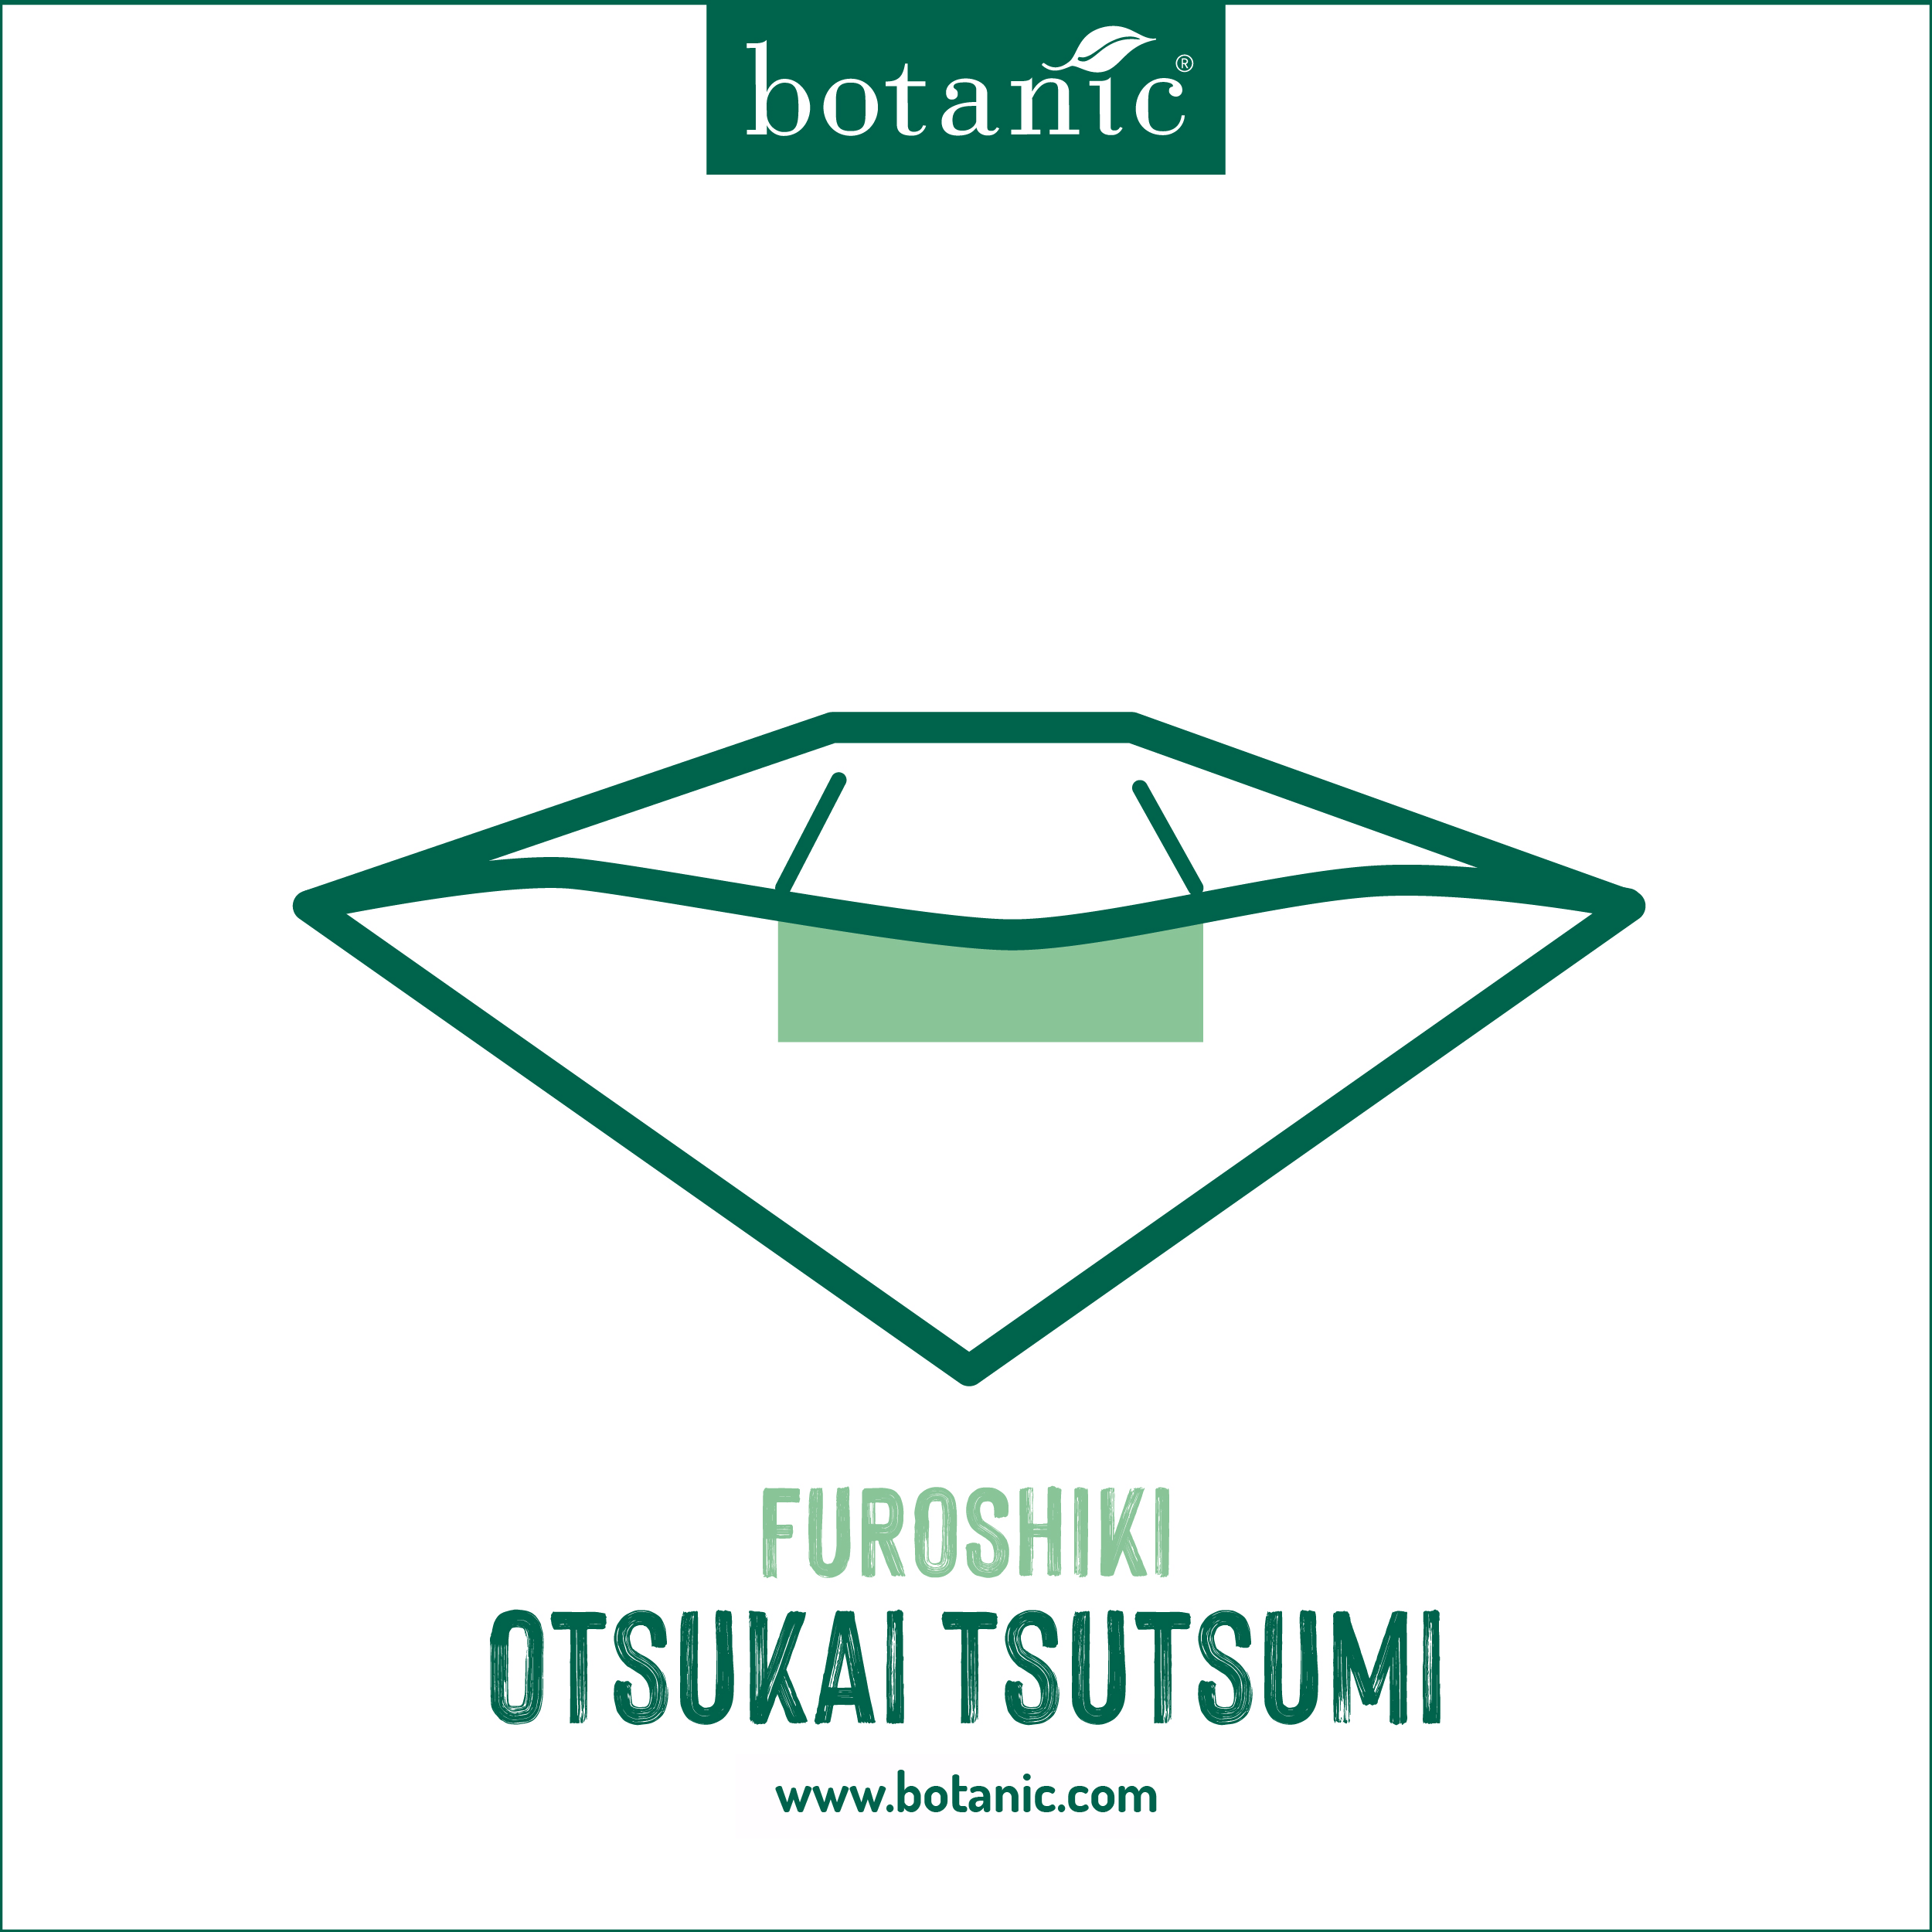 Furoshiki Otsukai Tsutsumi pour emballer vos cadeaux de forme rectangulaire